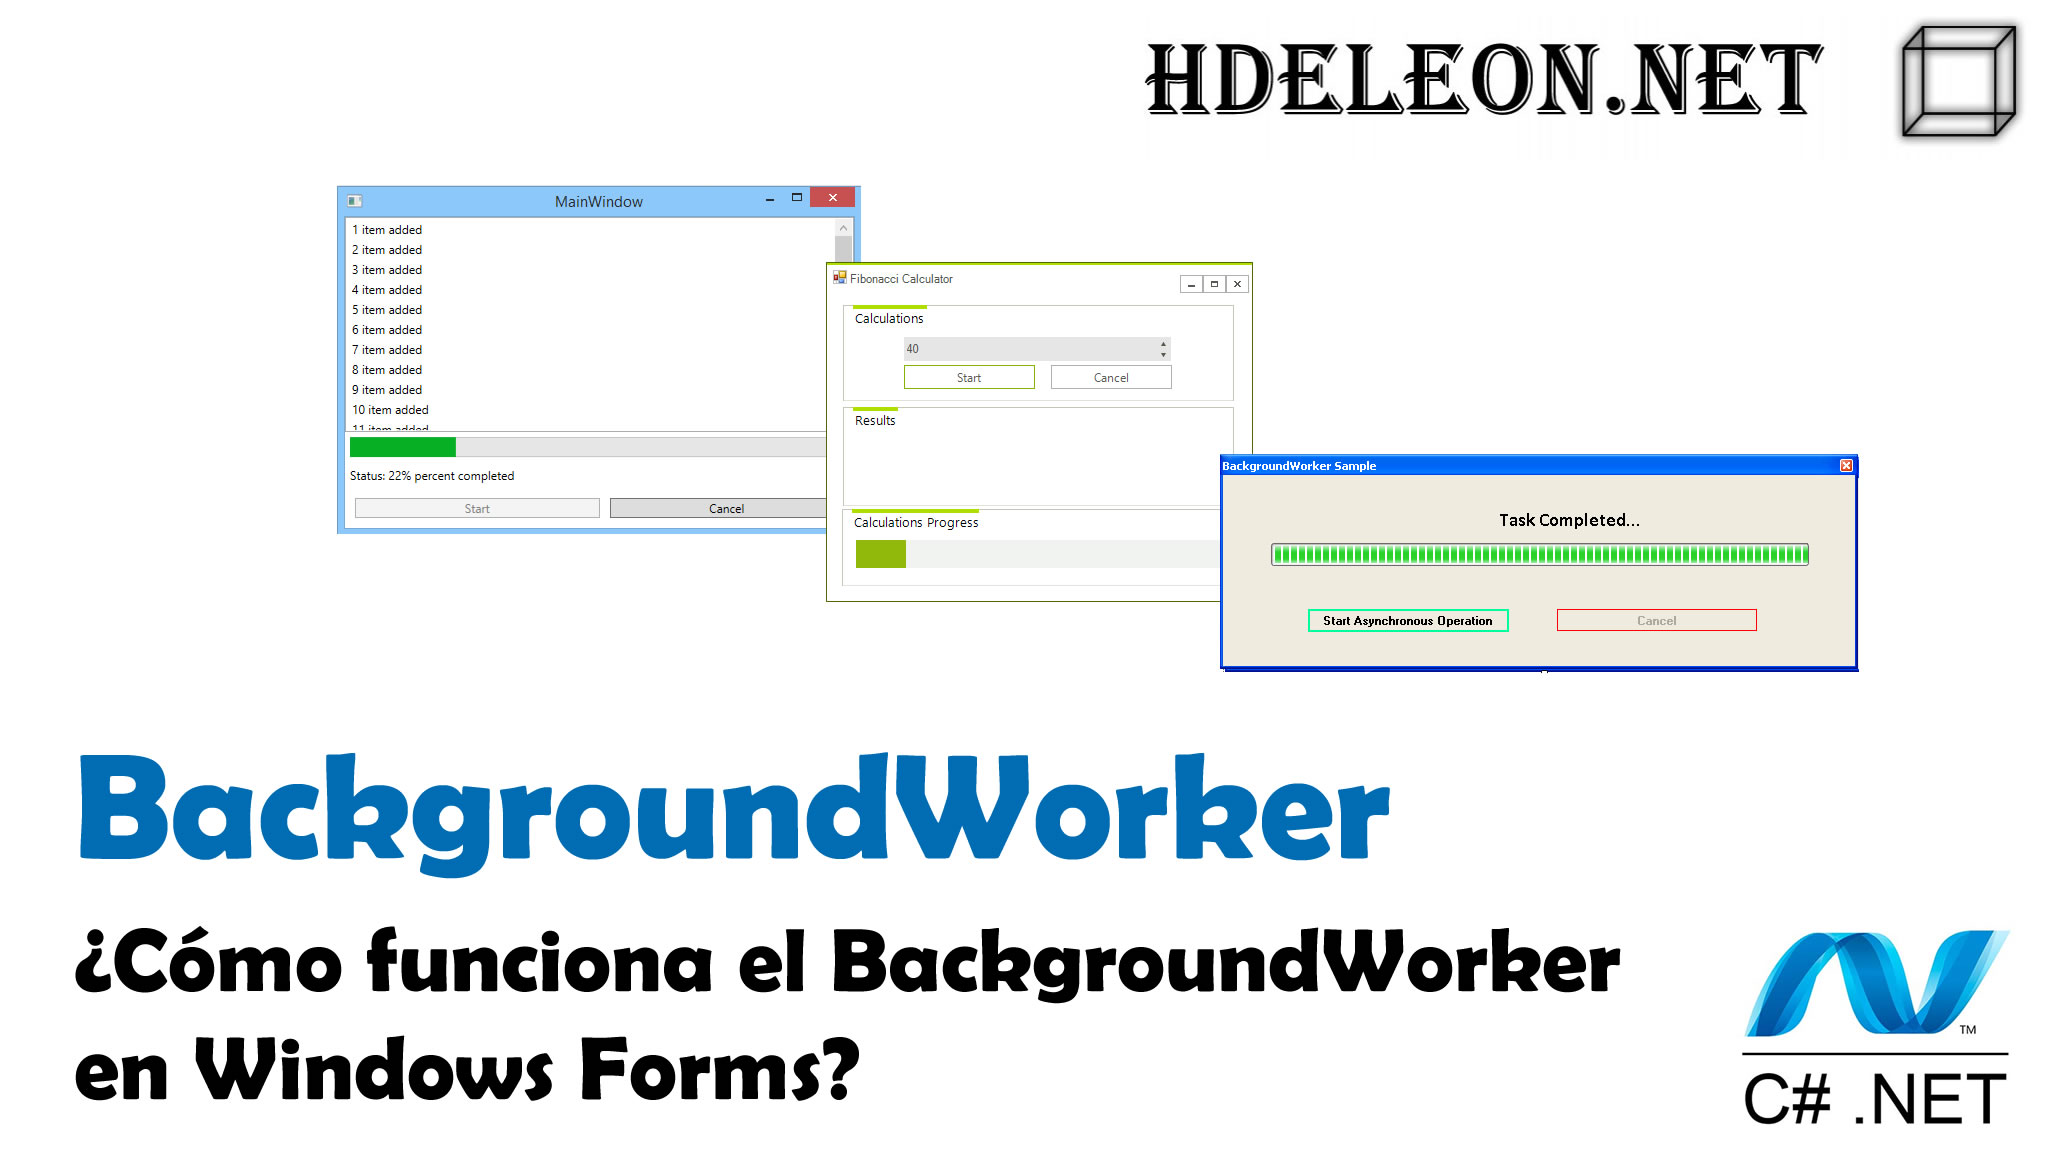 ¿Cómo funciona el BackgroundWorker en C# Windows Forms?